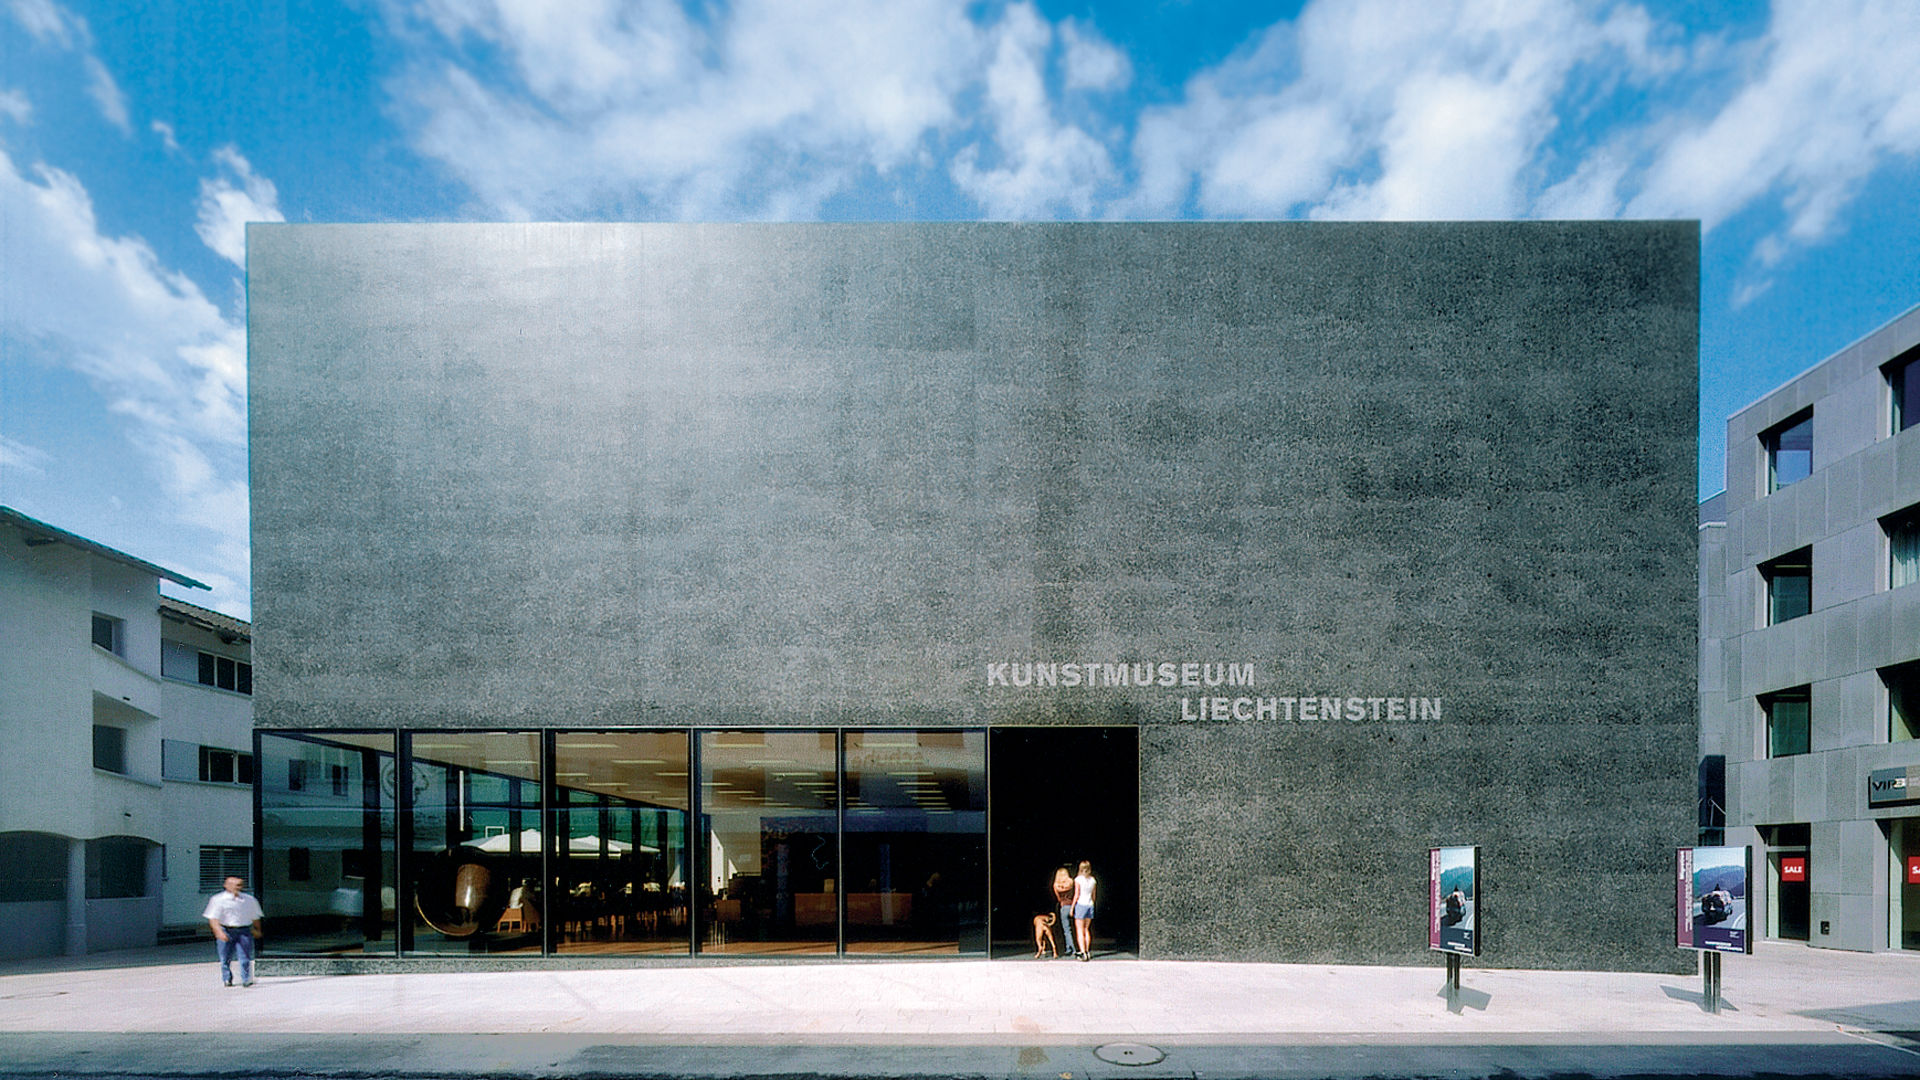 Kunstmuseum Liechtenstein mit Hilti Art Foundation